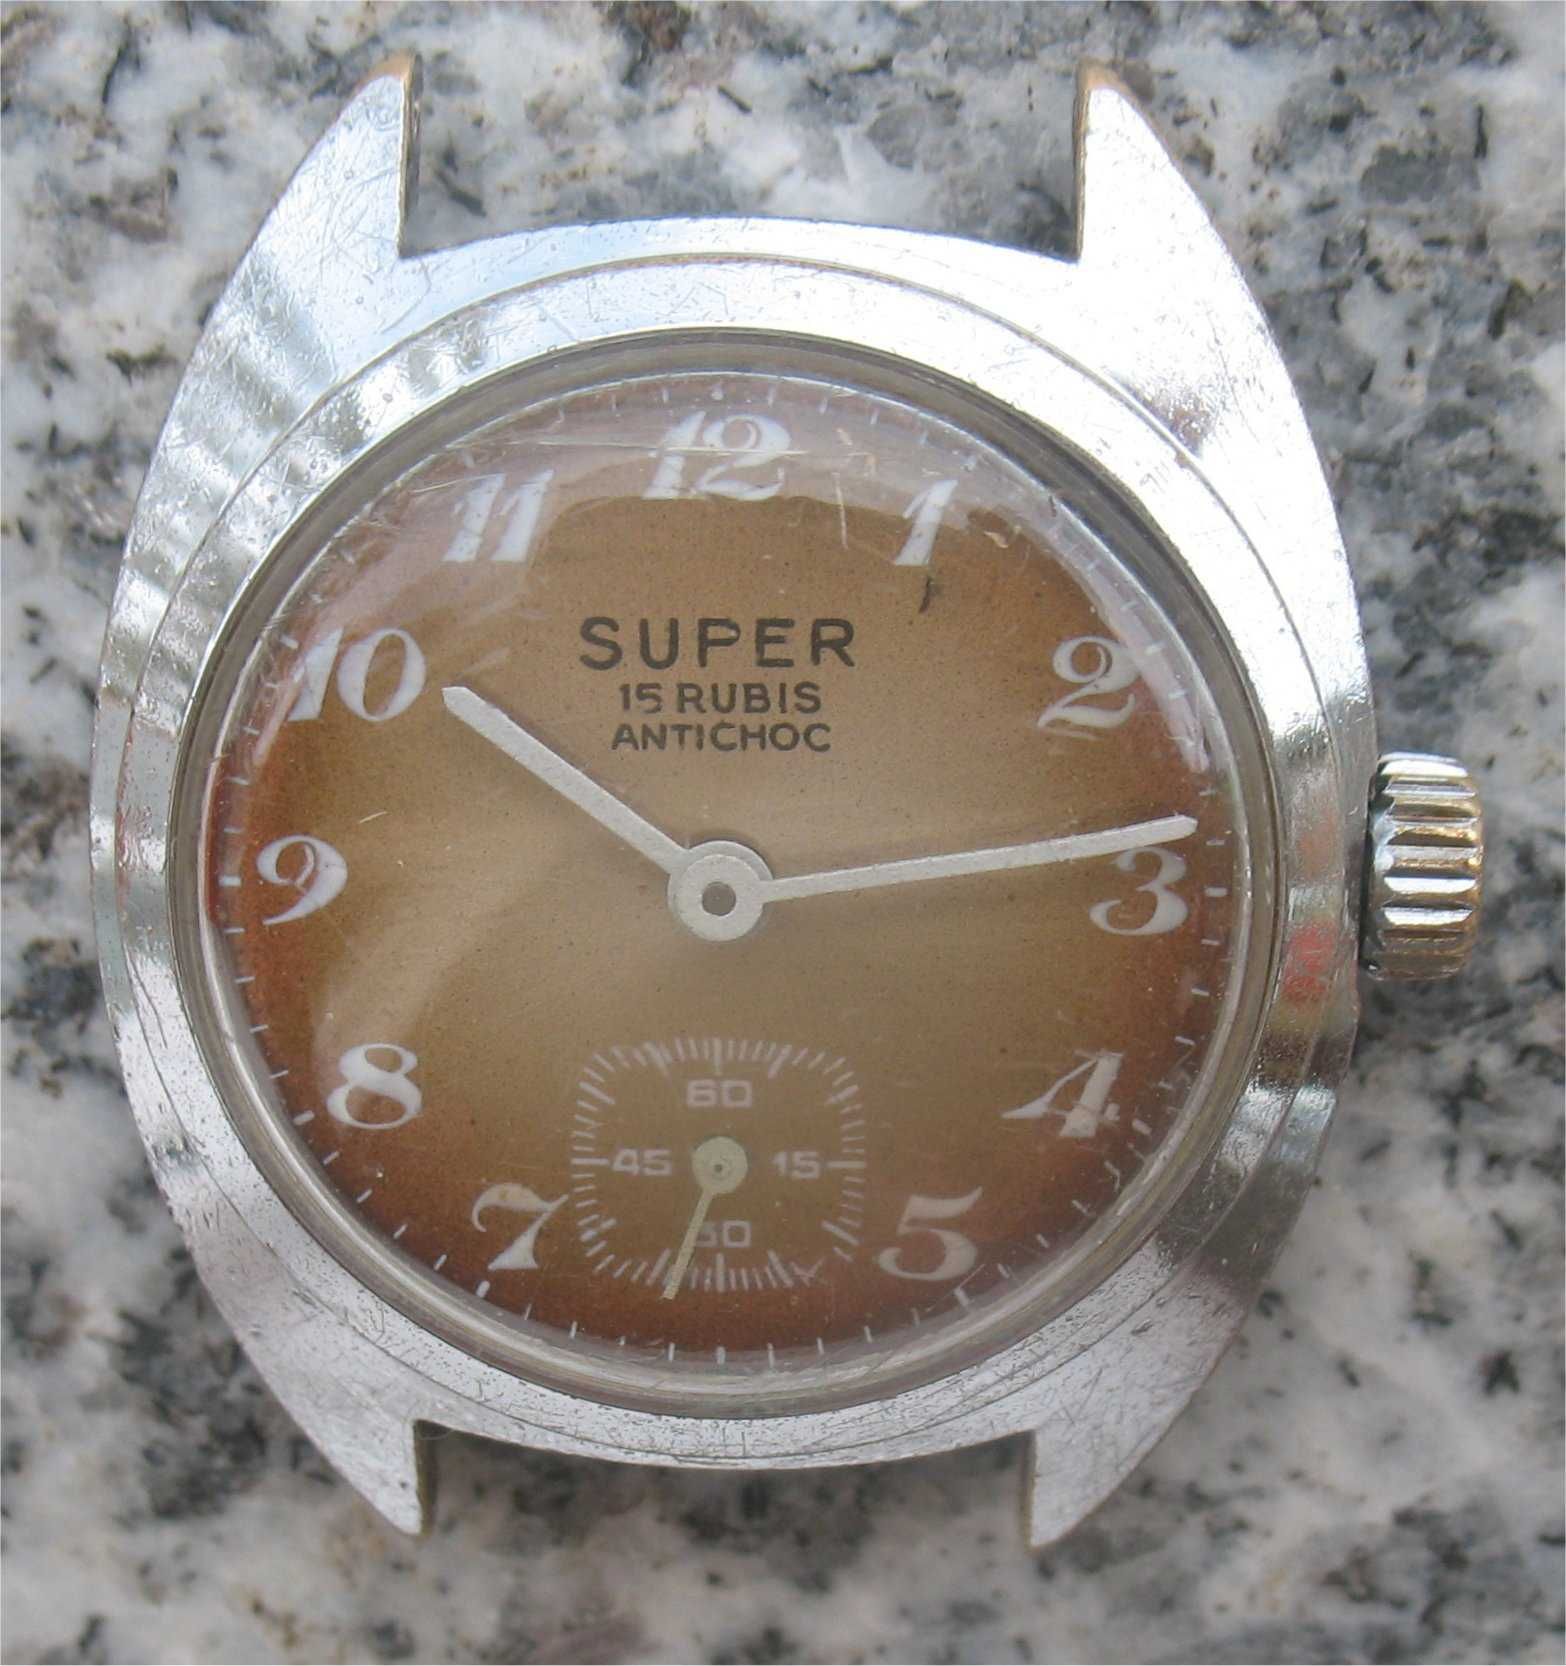 Relógio Vintage de Corda Super - 15 Rubis - Antichoc